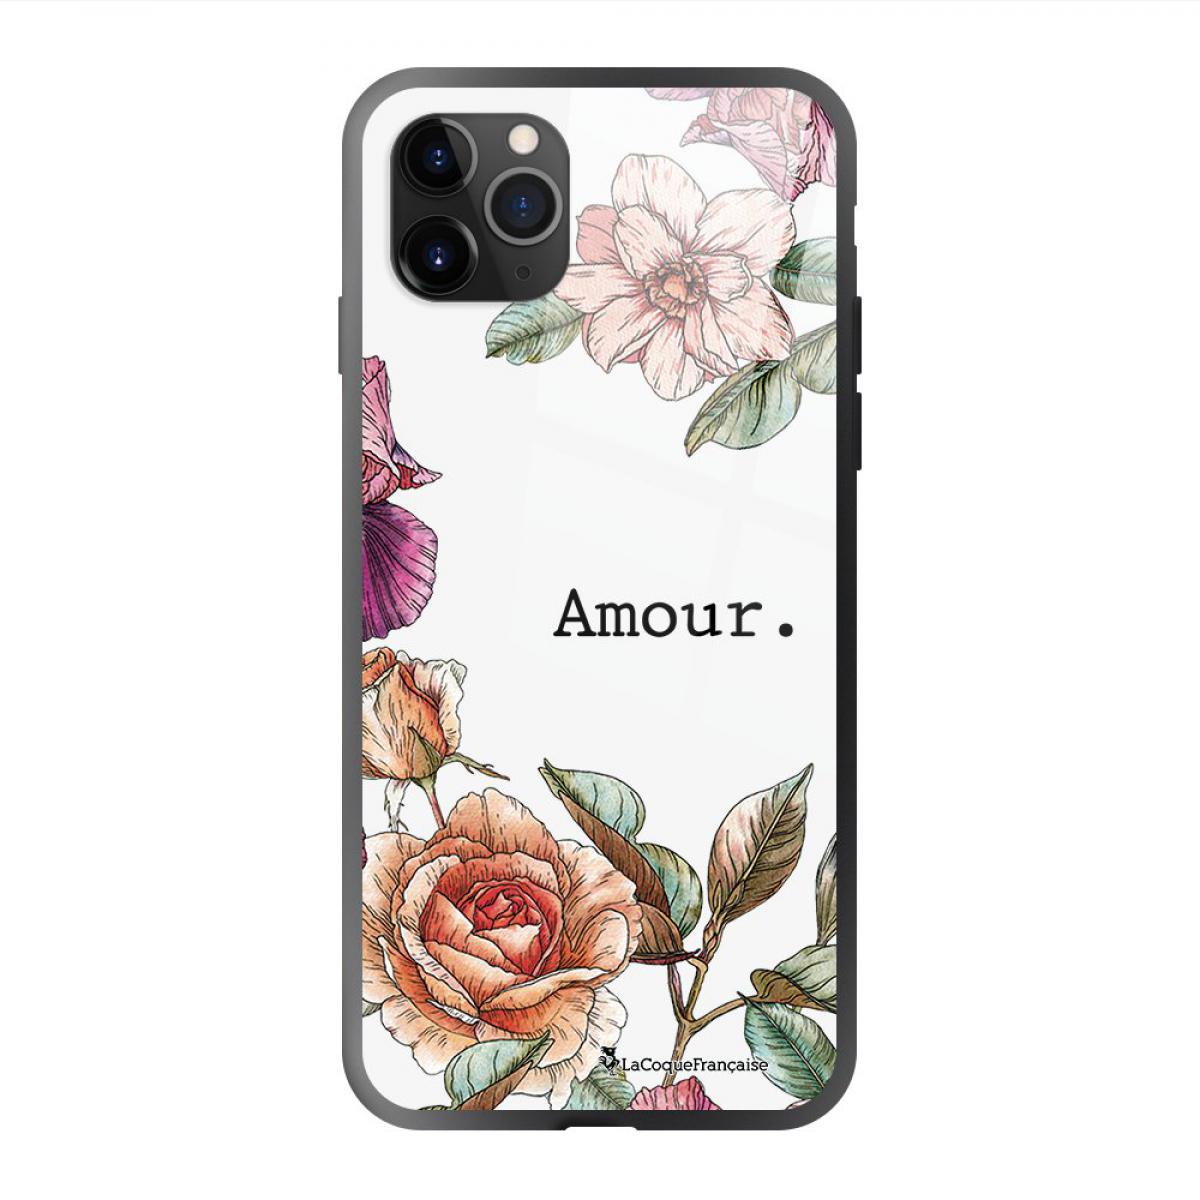 La Coque Francaise - Coque iPhone 11 Pro soft touch noir effet glossy Amour en fleurs Design La Coque Francaise - Coque, étui smartphone